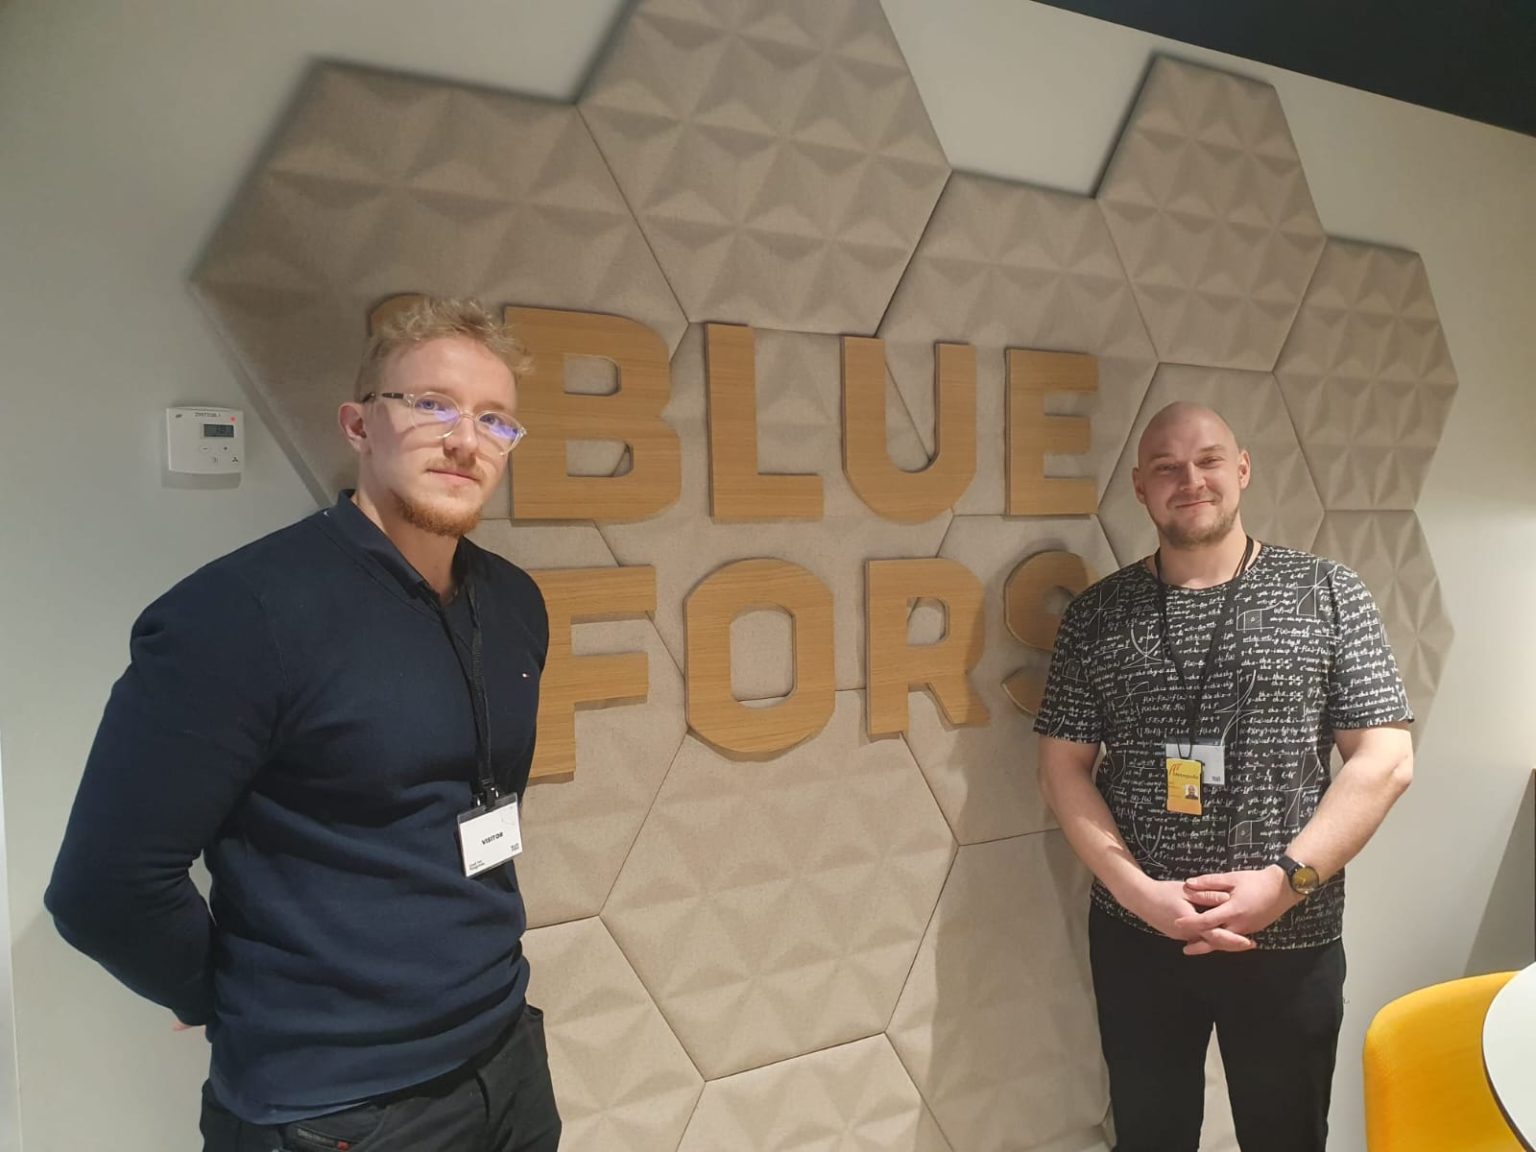 Projekti 56 Bluefors: Daniel Korhonen ja Lauri Ristolainen